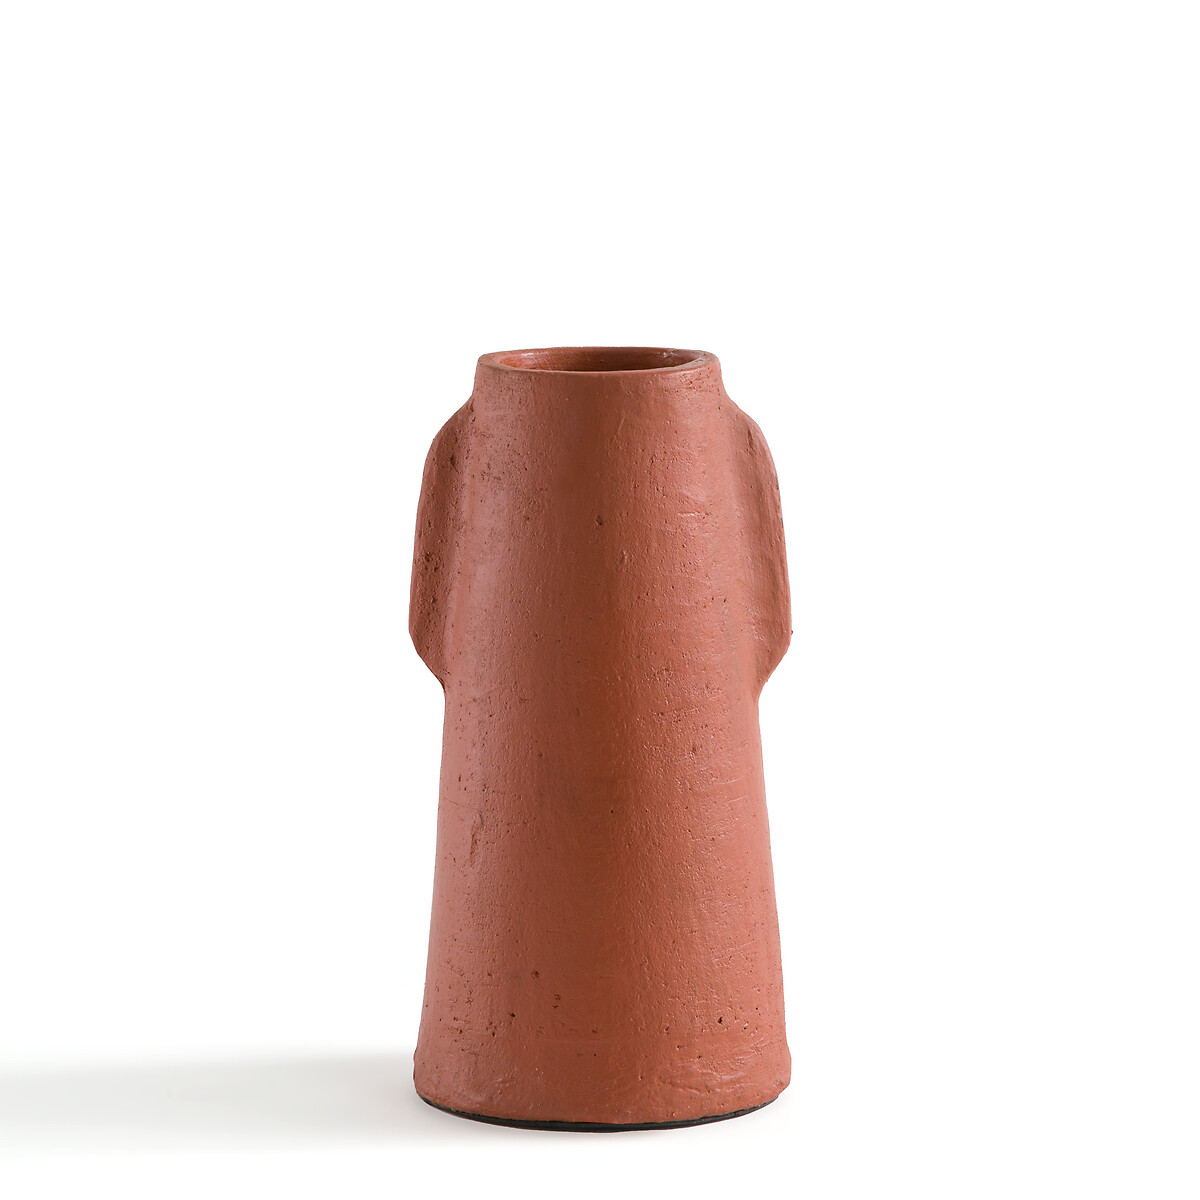 ваза из керамики pastela единый размер каштановый Ваза из керамики В31 см Sira единый размер каштановый